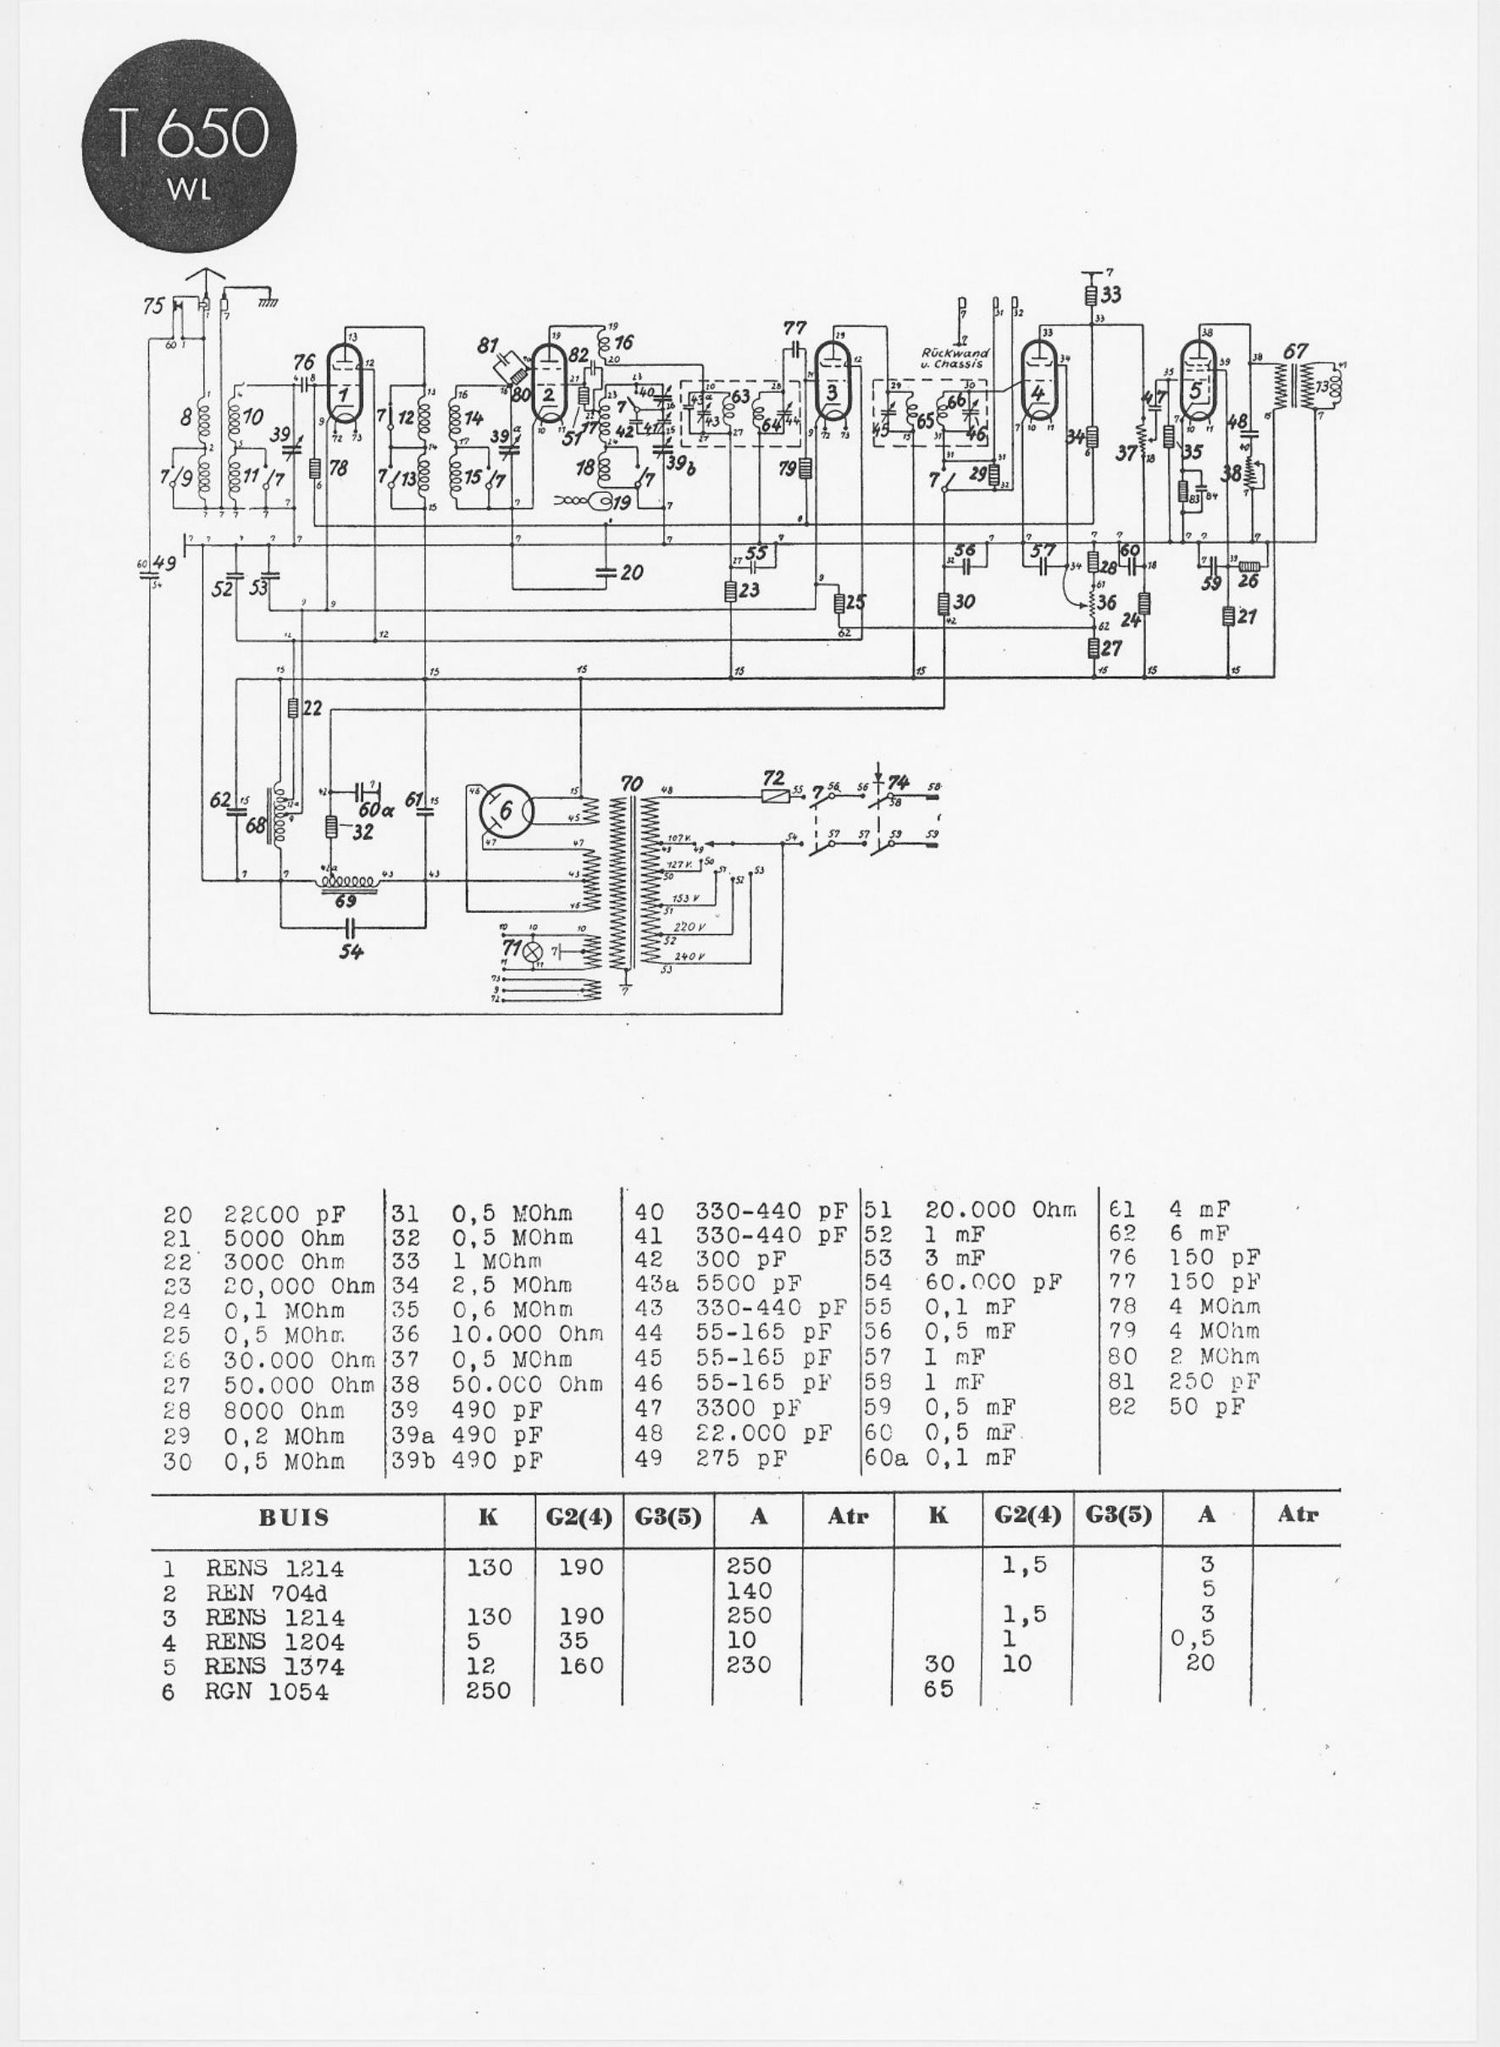 Telefunken 650 WL Schematic